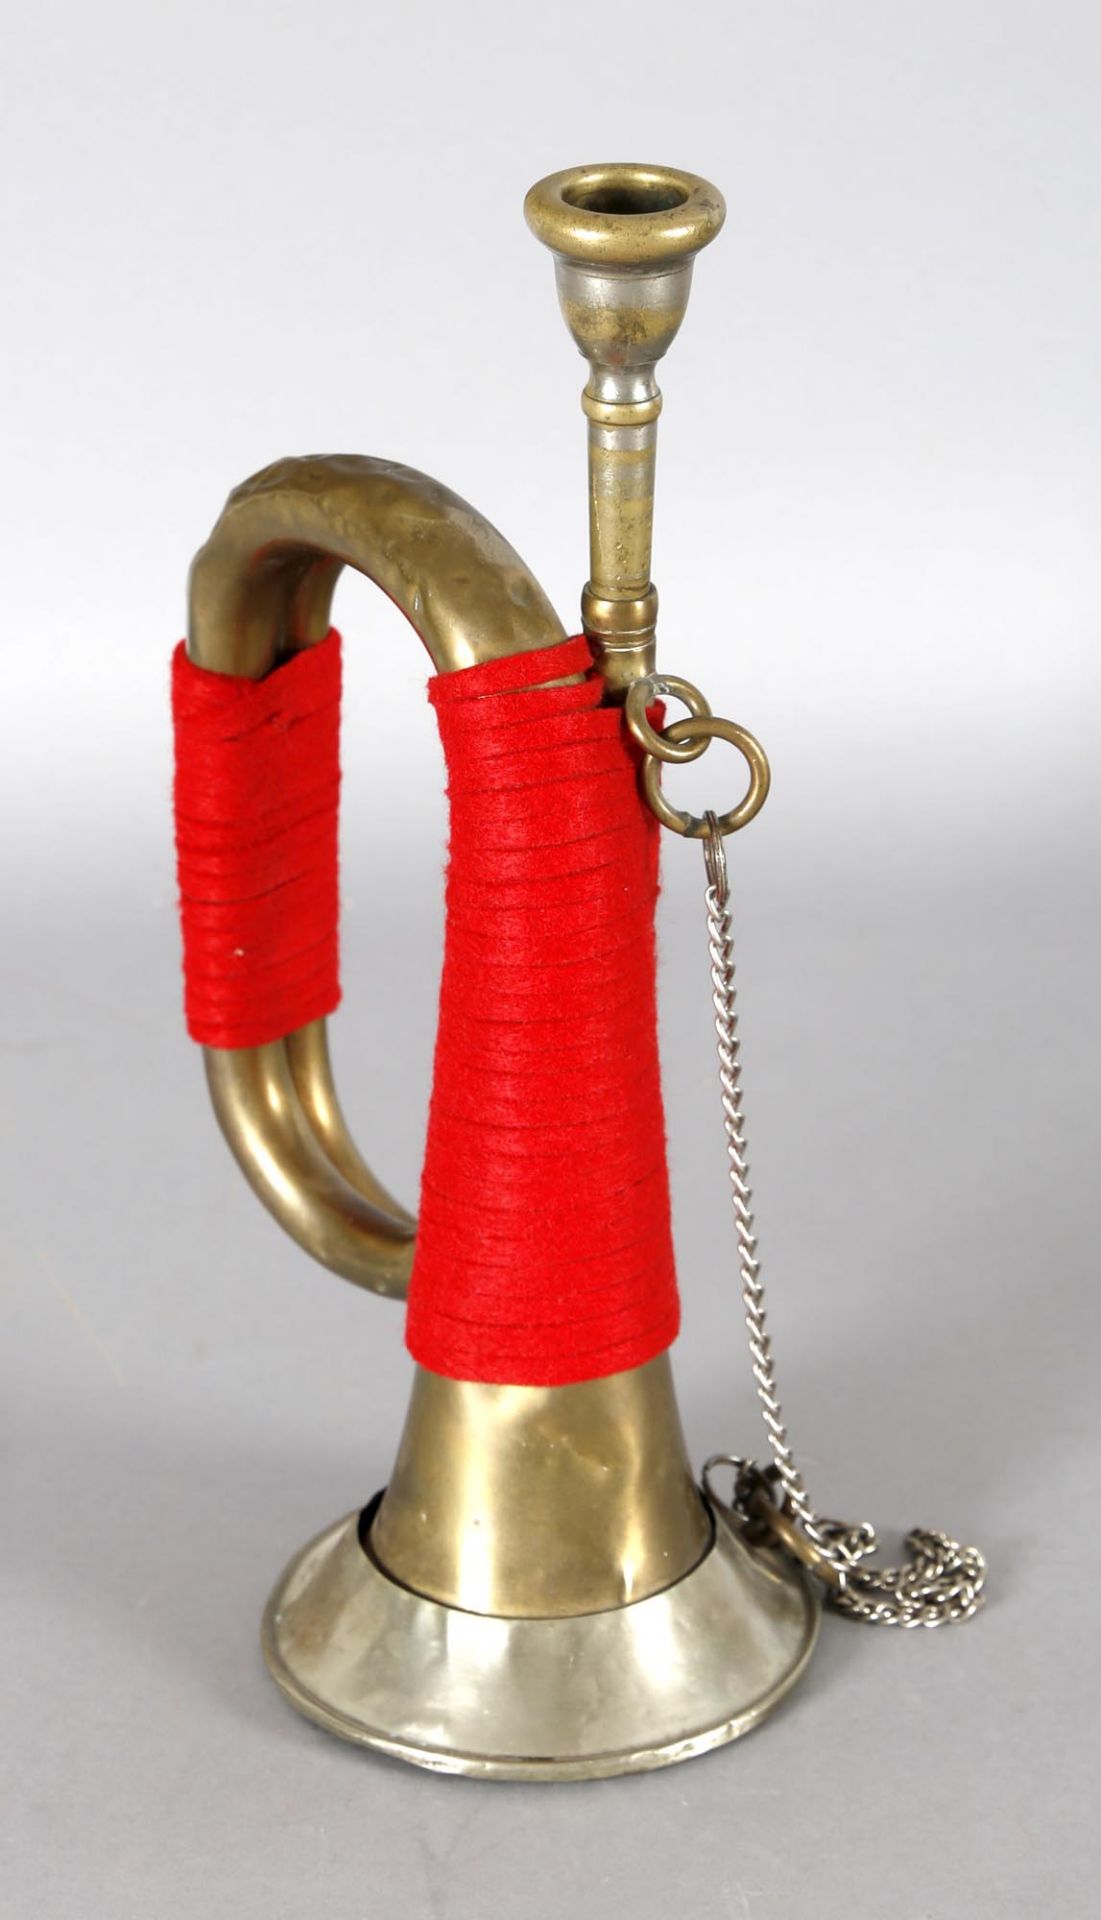 altes militärisches SignalhornMessing, Trichter mit Blech verstärkt, rote Wickelung, original - Bild 2 aus 2